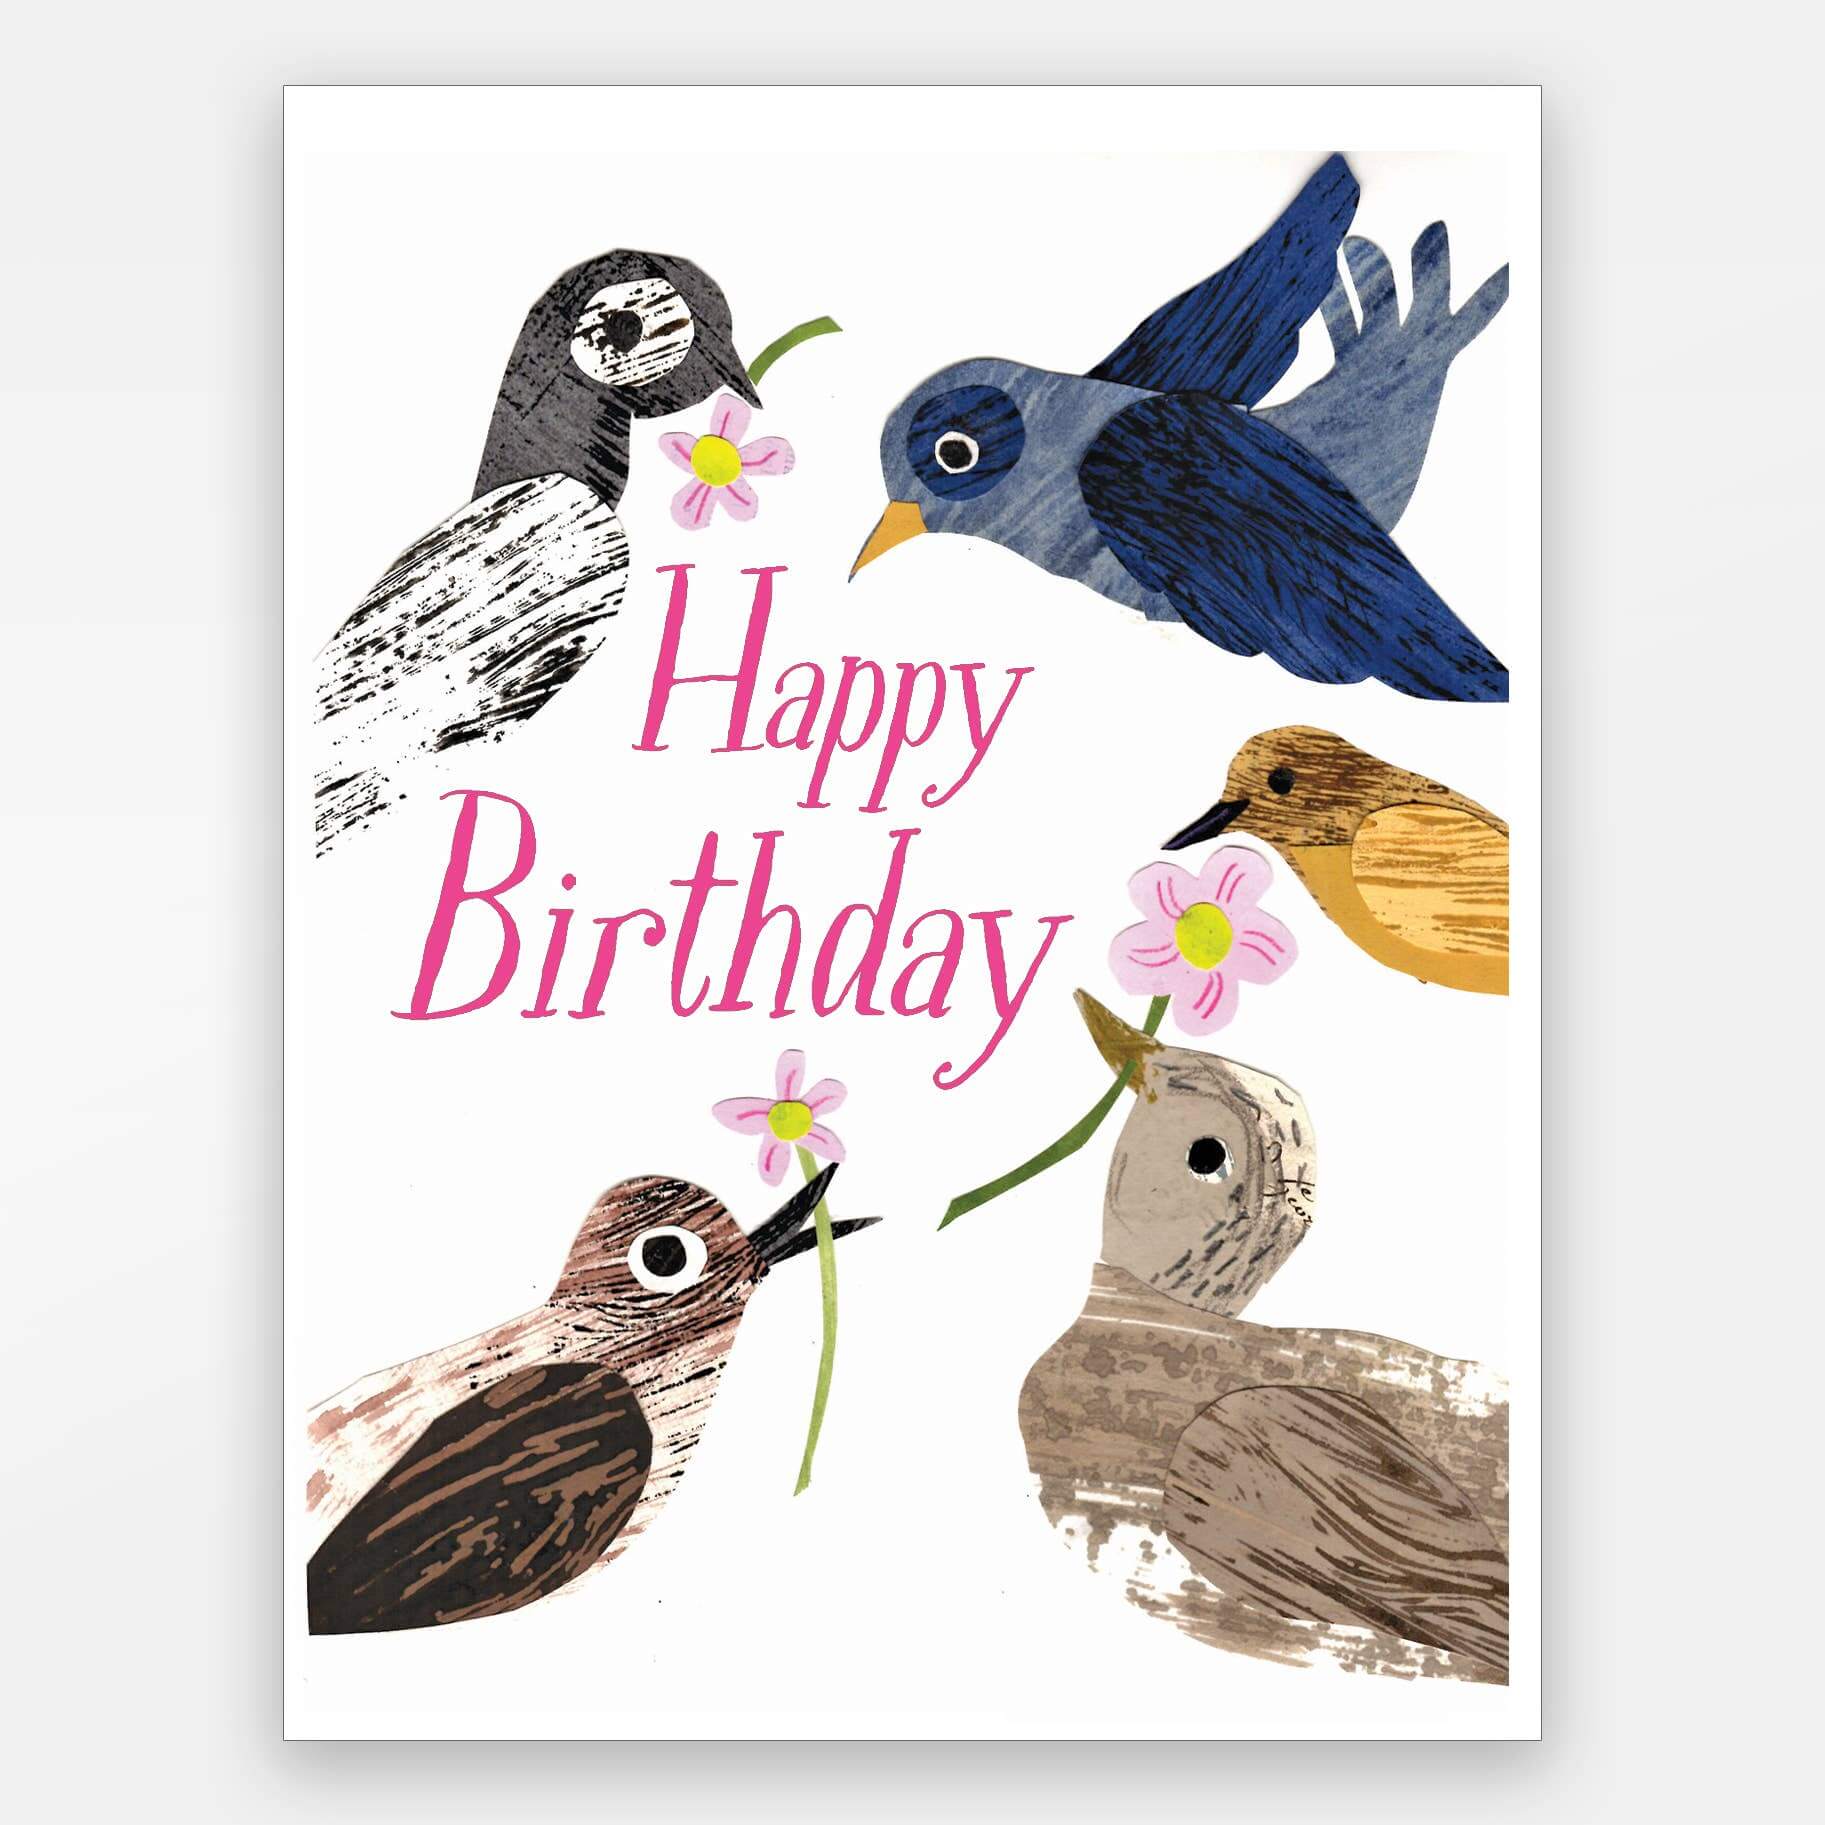 Happy Birthday birds card